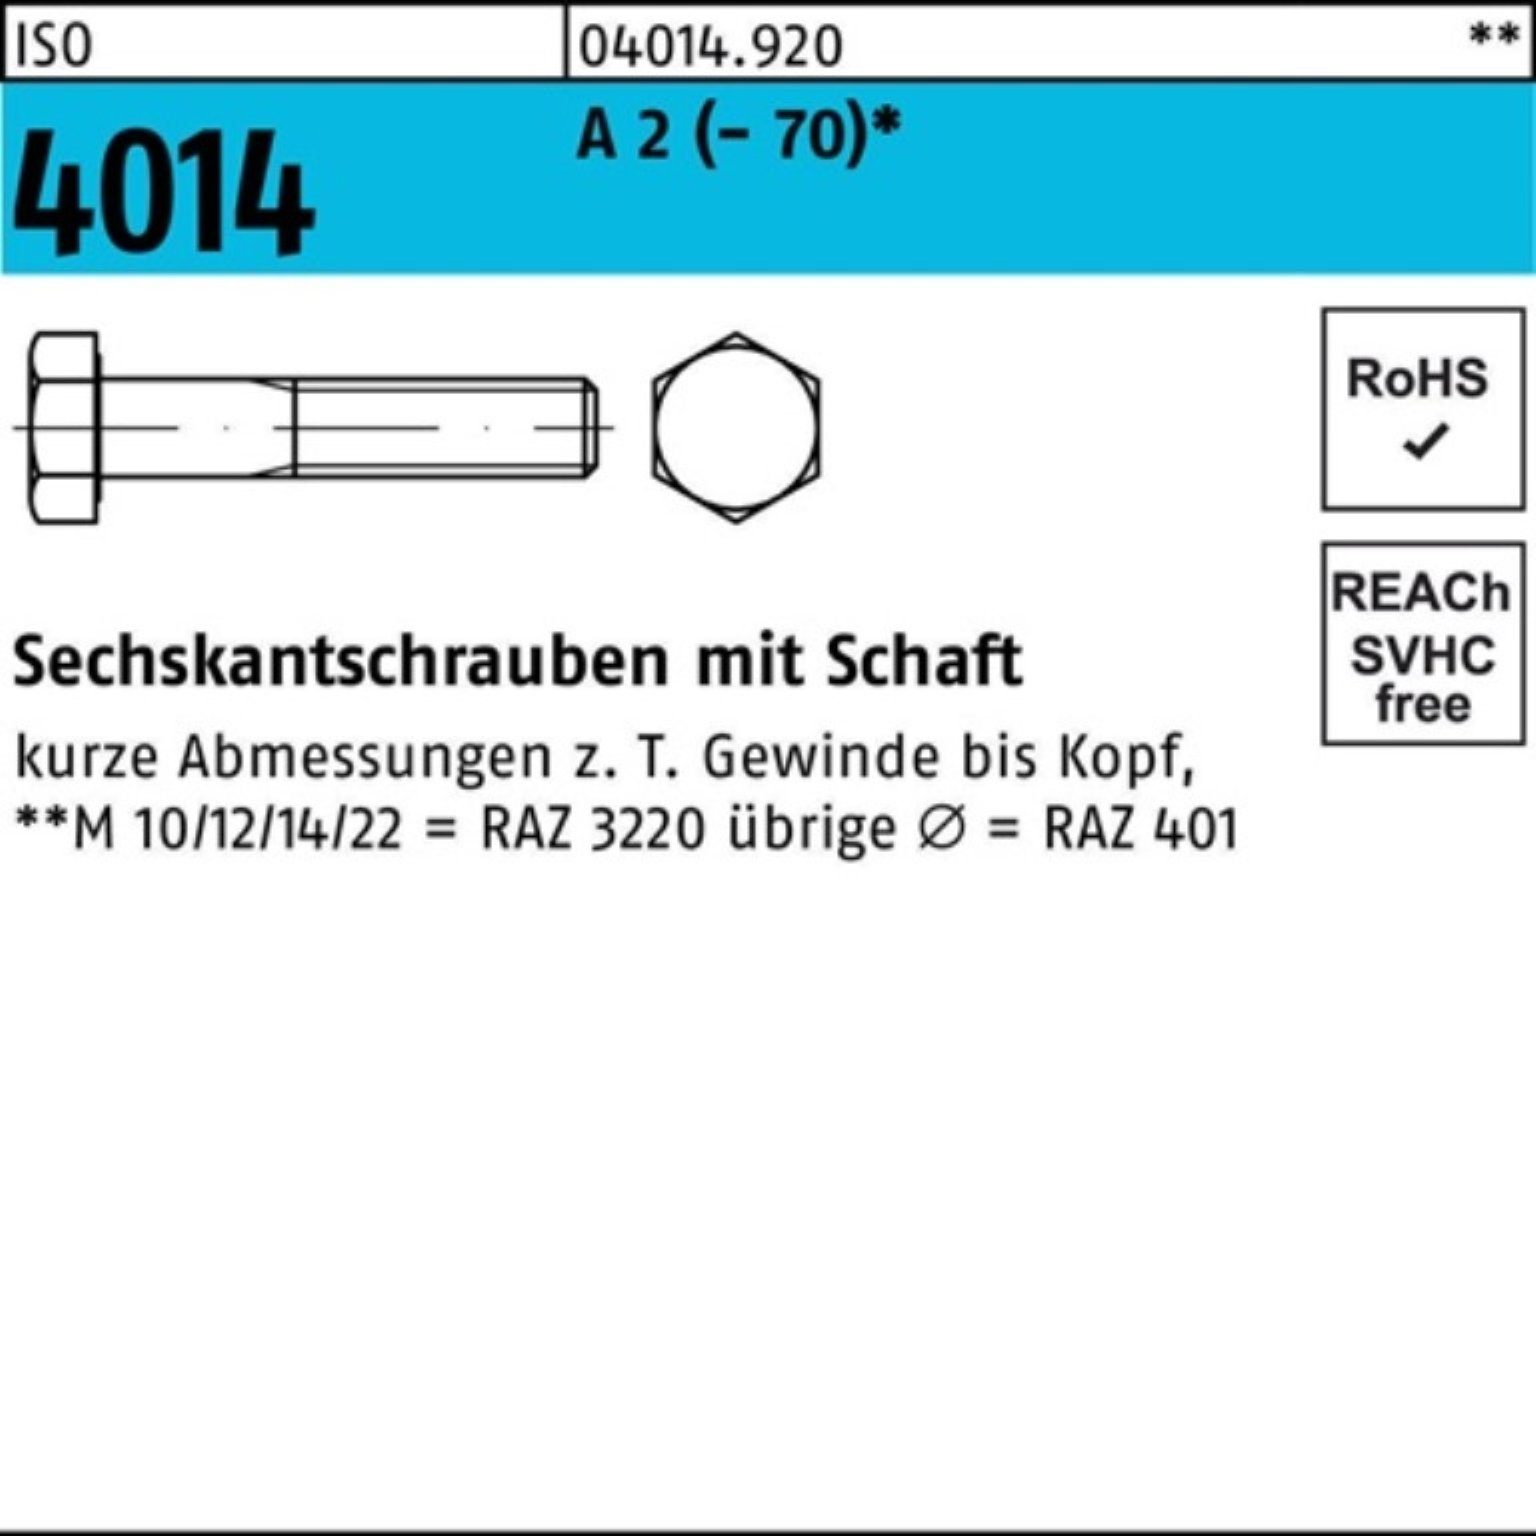 Bufab Sechskantschraube 100er Pack Sechskantschraube ISO 4014 Schaft M6x 50 A 2 (70) 100 St